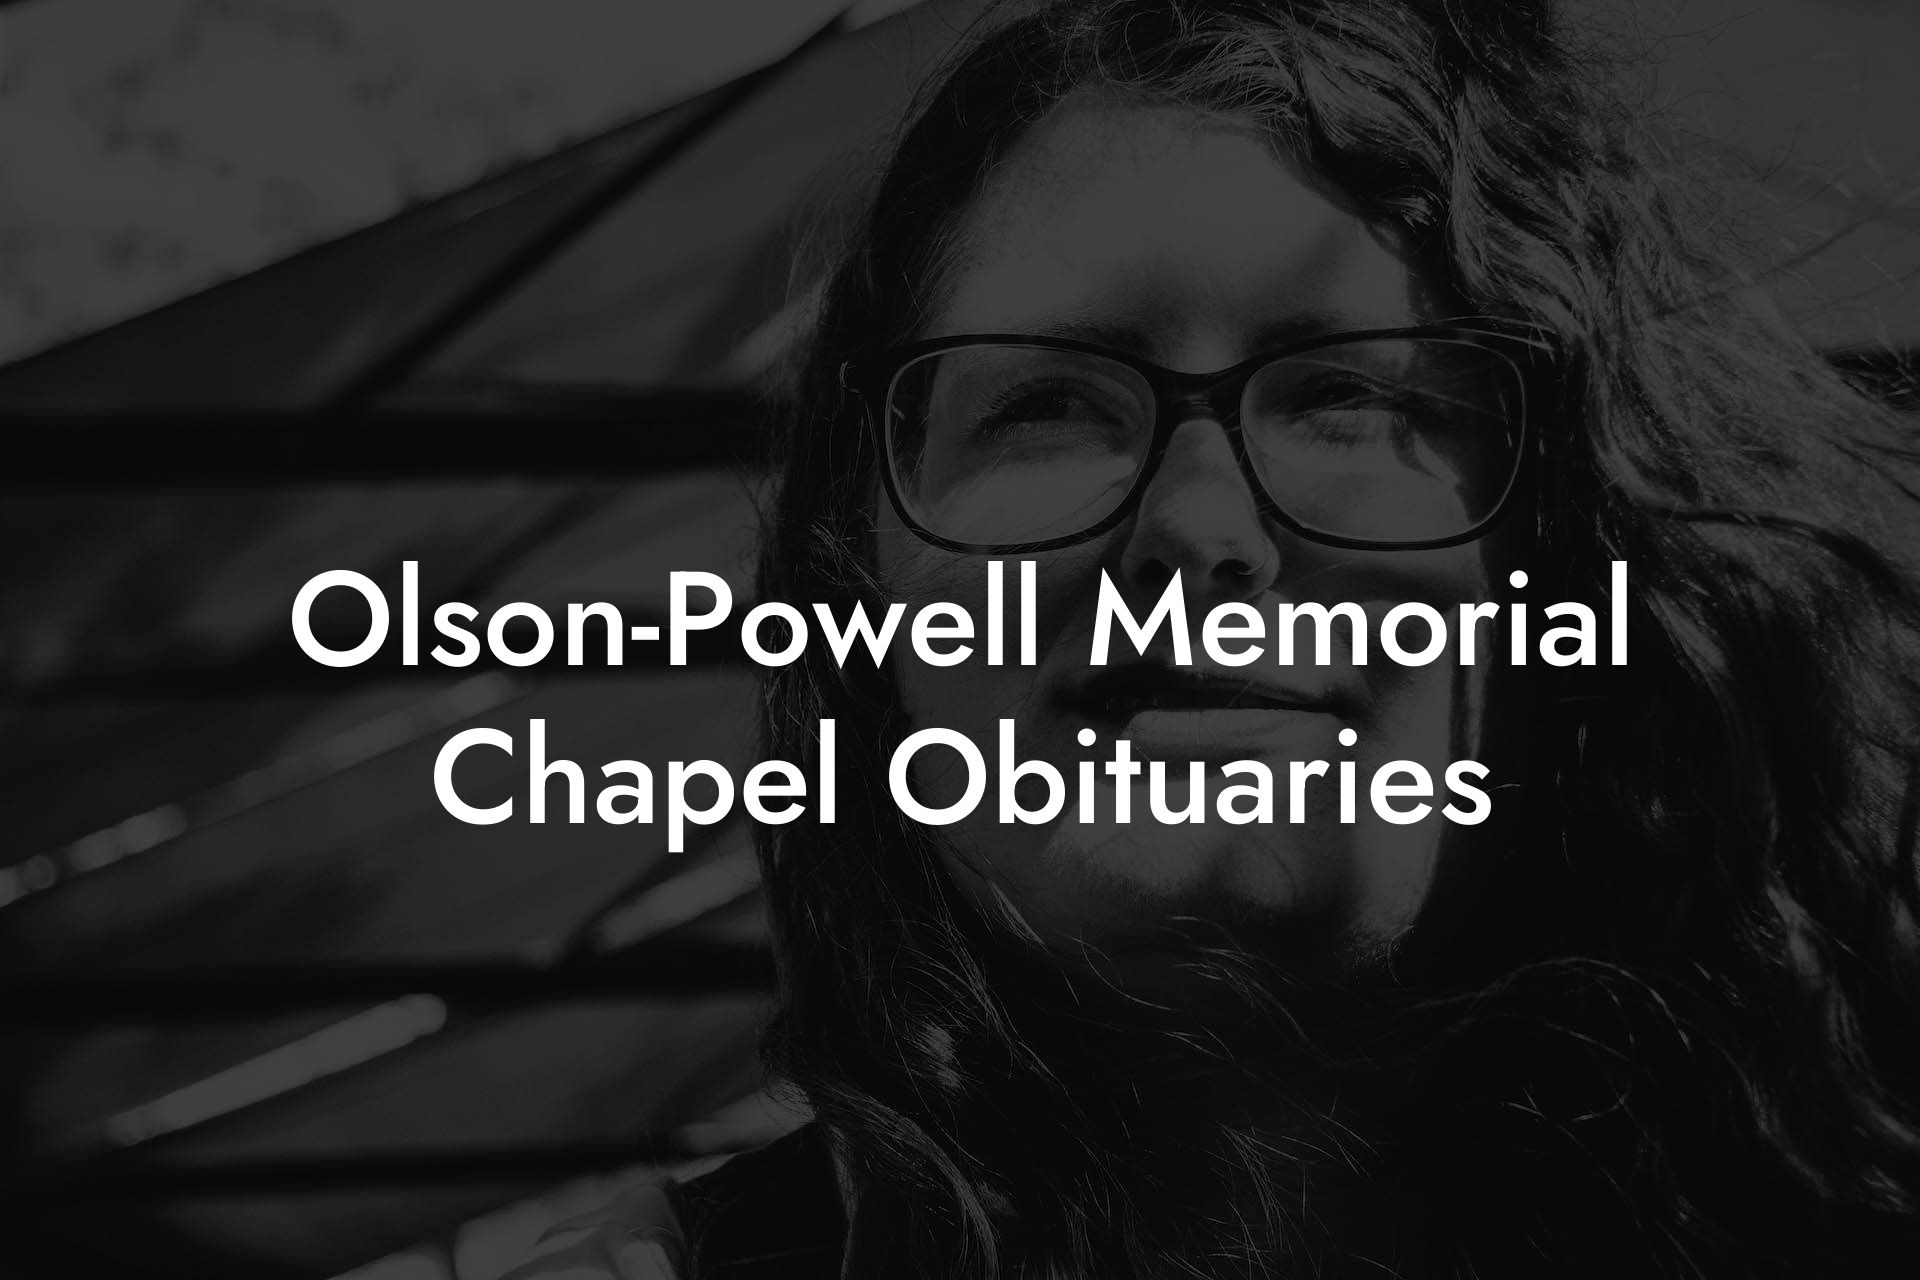 Olson-Powell Memorial Chapel Obituaries